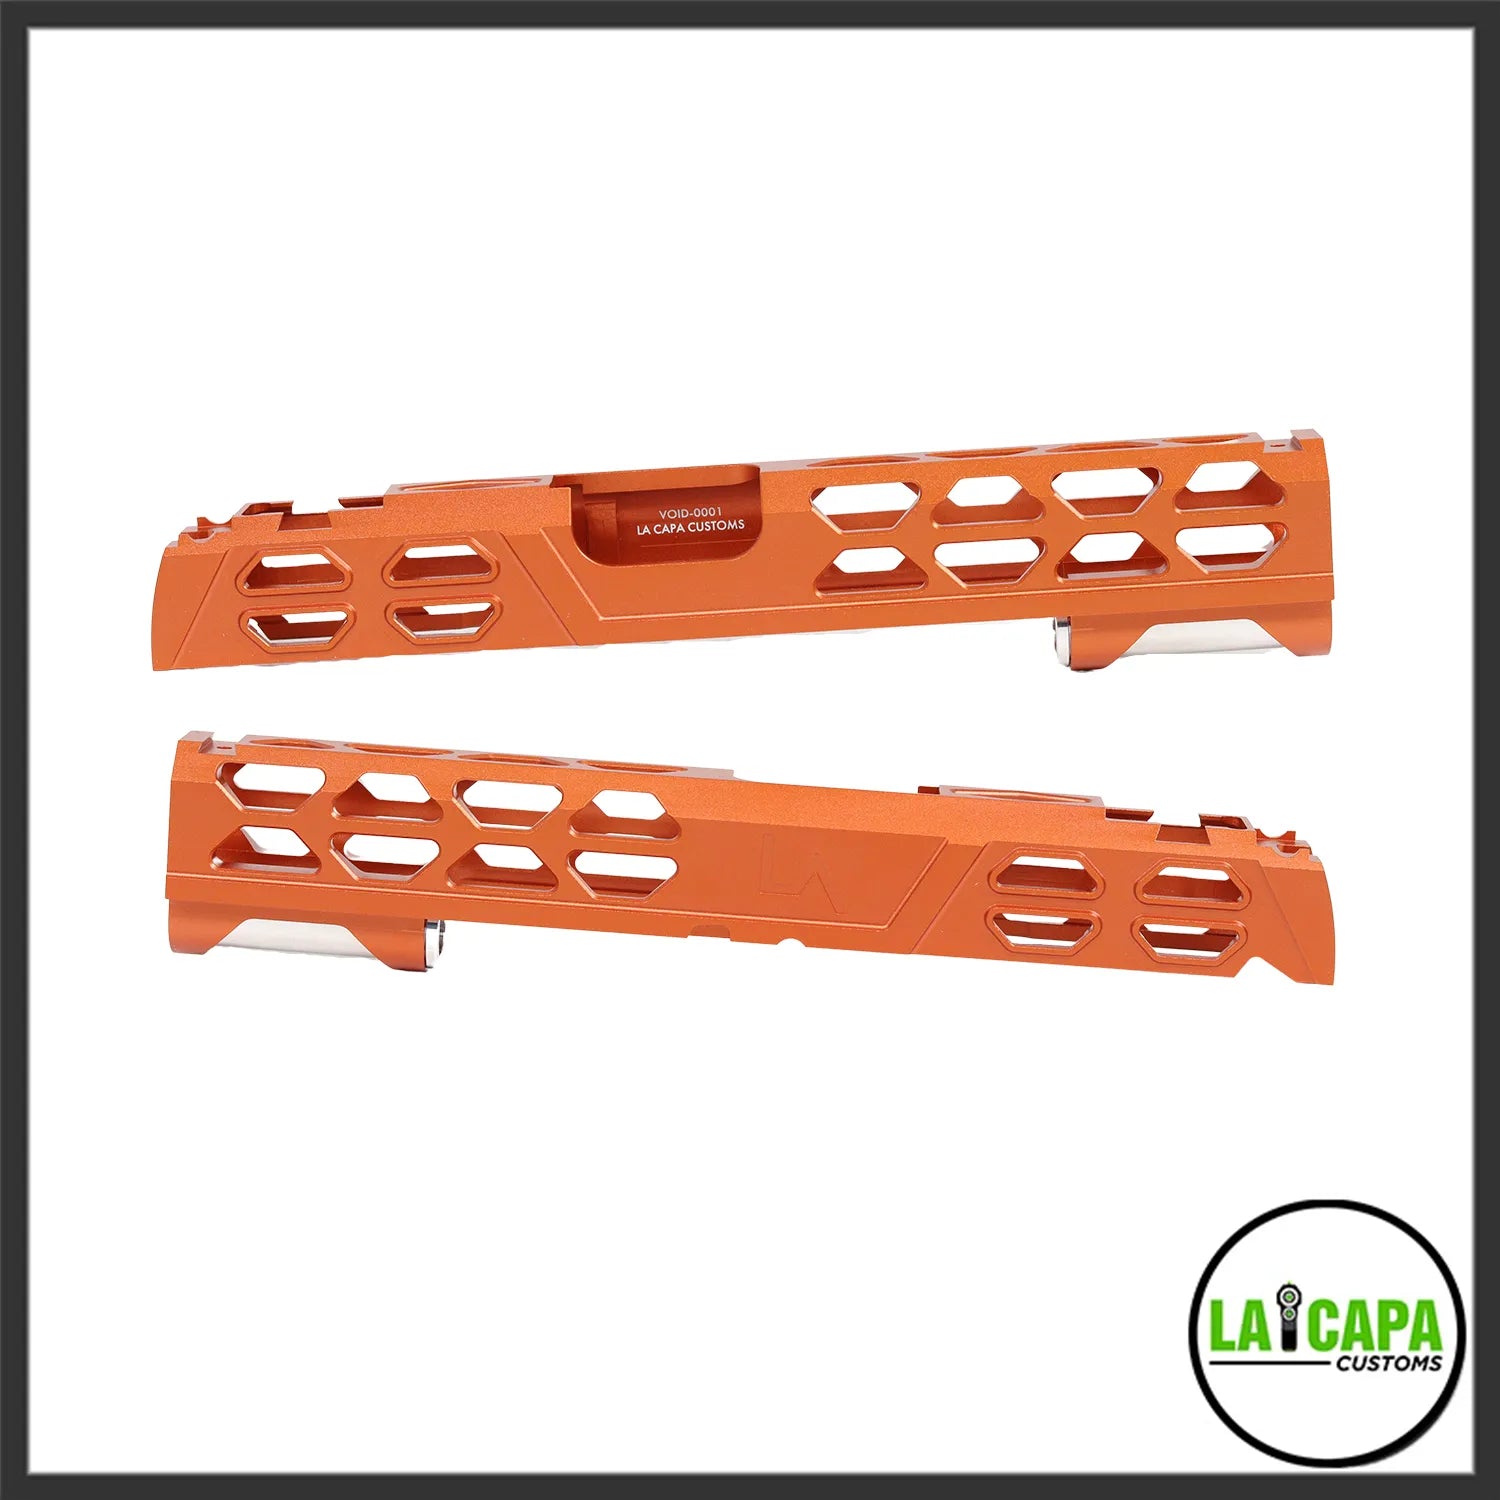 LA Capa Customs 5.1 “VOID” Aluminum Slide

- Orange